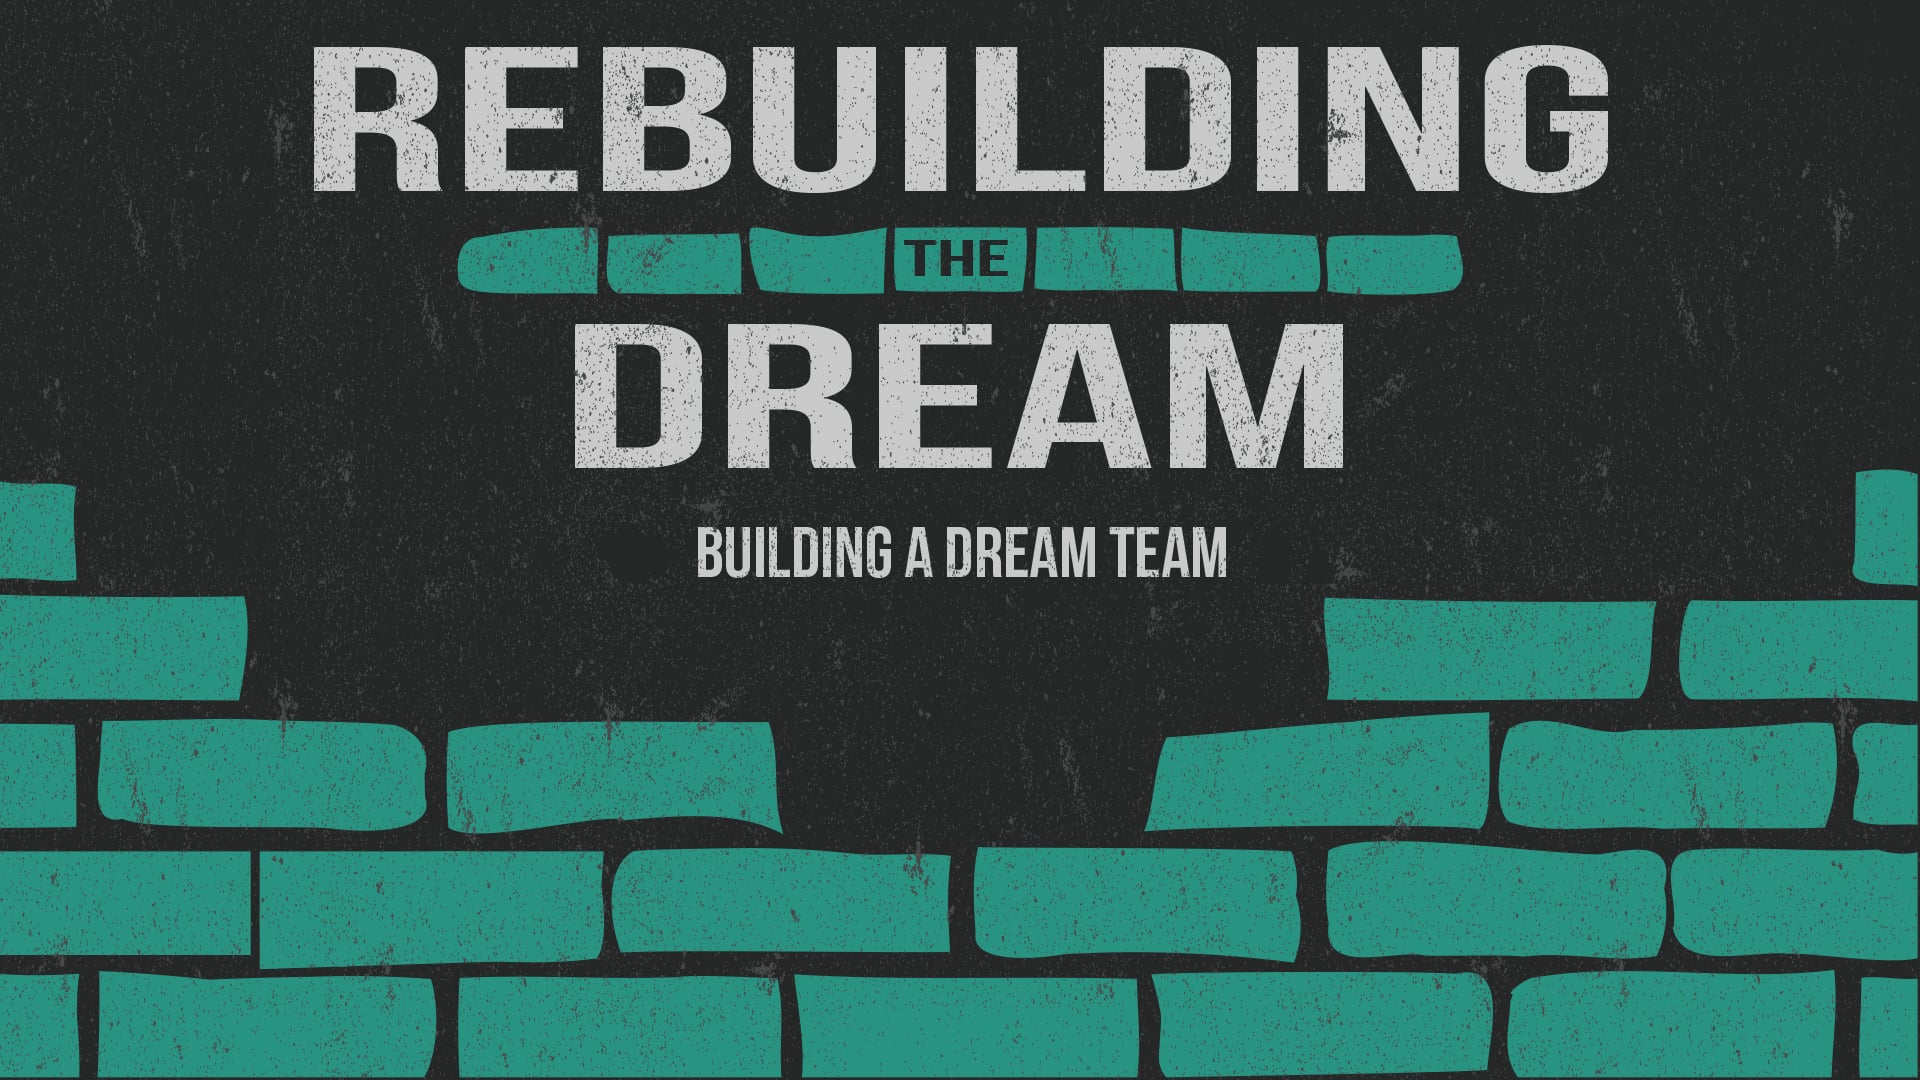 Building A Dream Team